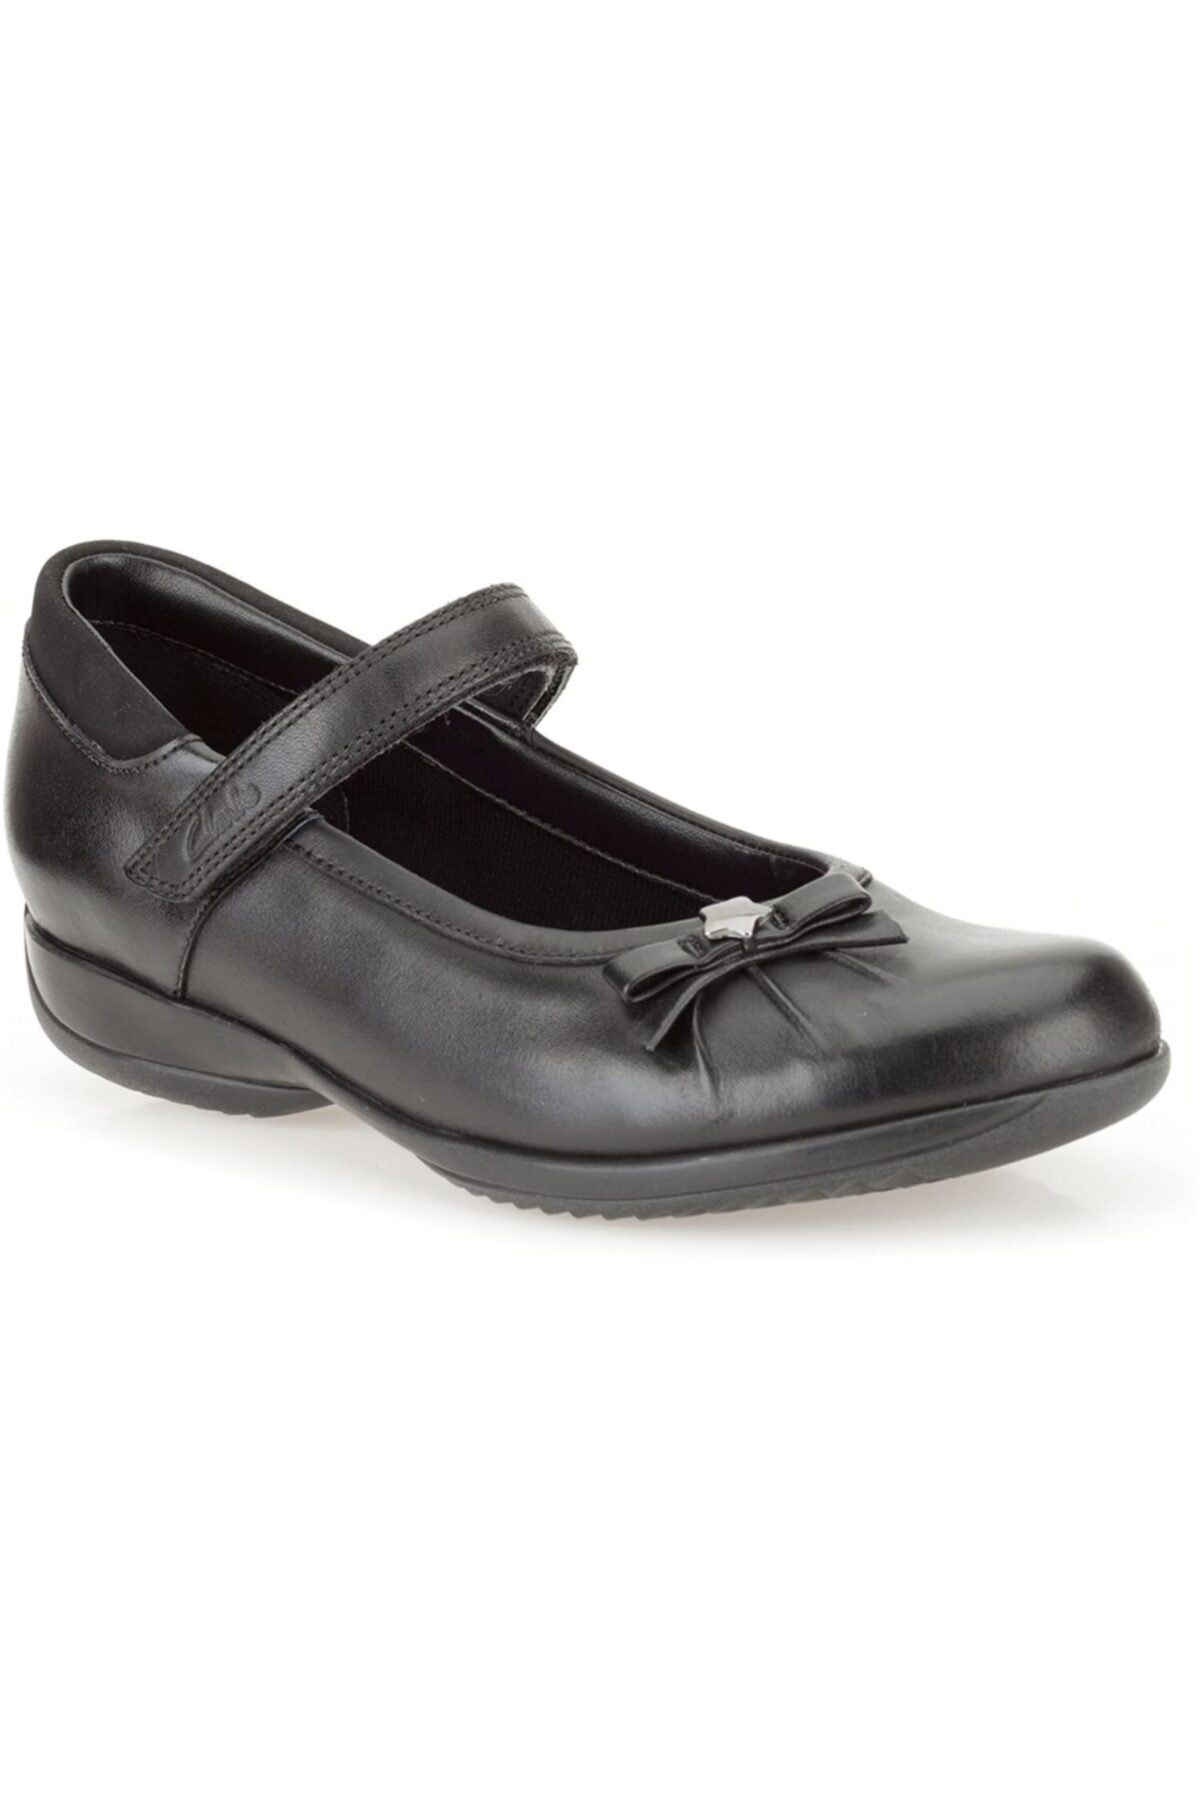 CLARKS Okul Ayakkabı Siyah Deri Daisy Spark Okul Ayakkabıları Mükemmel Bir Seçimdir.